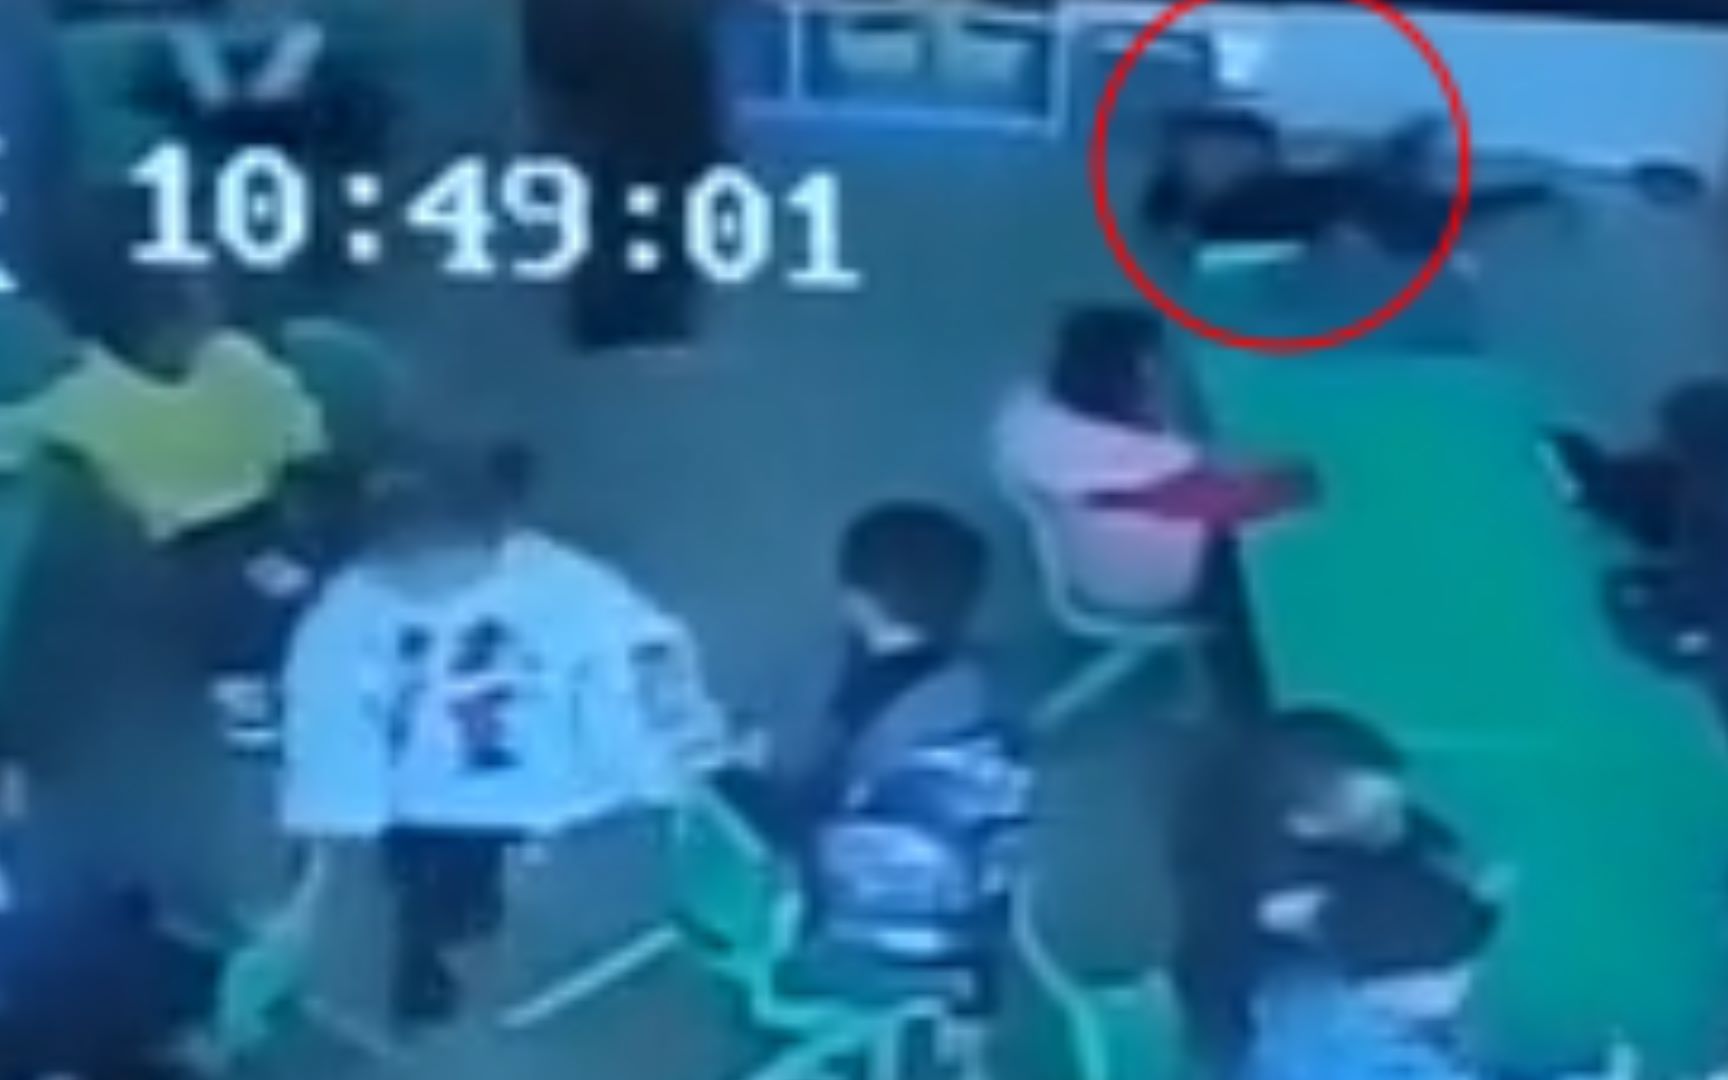 安徽一幼儿园老师重摔男童 家长询问被踢出群 警方发布情况通报